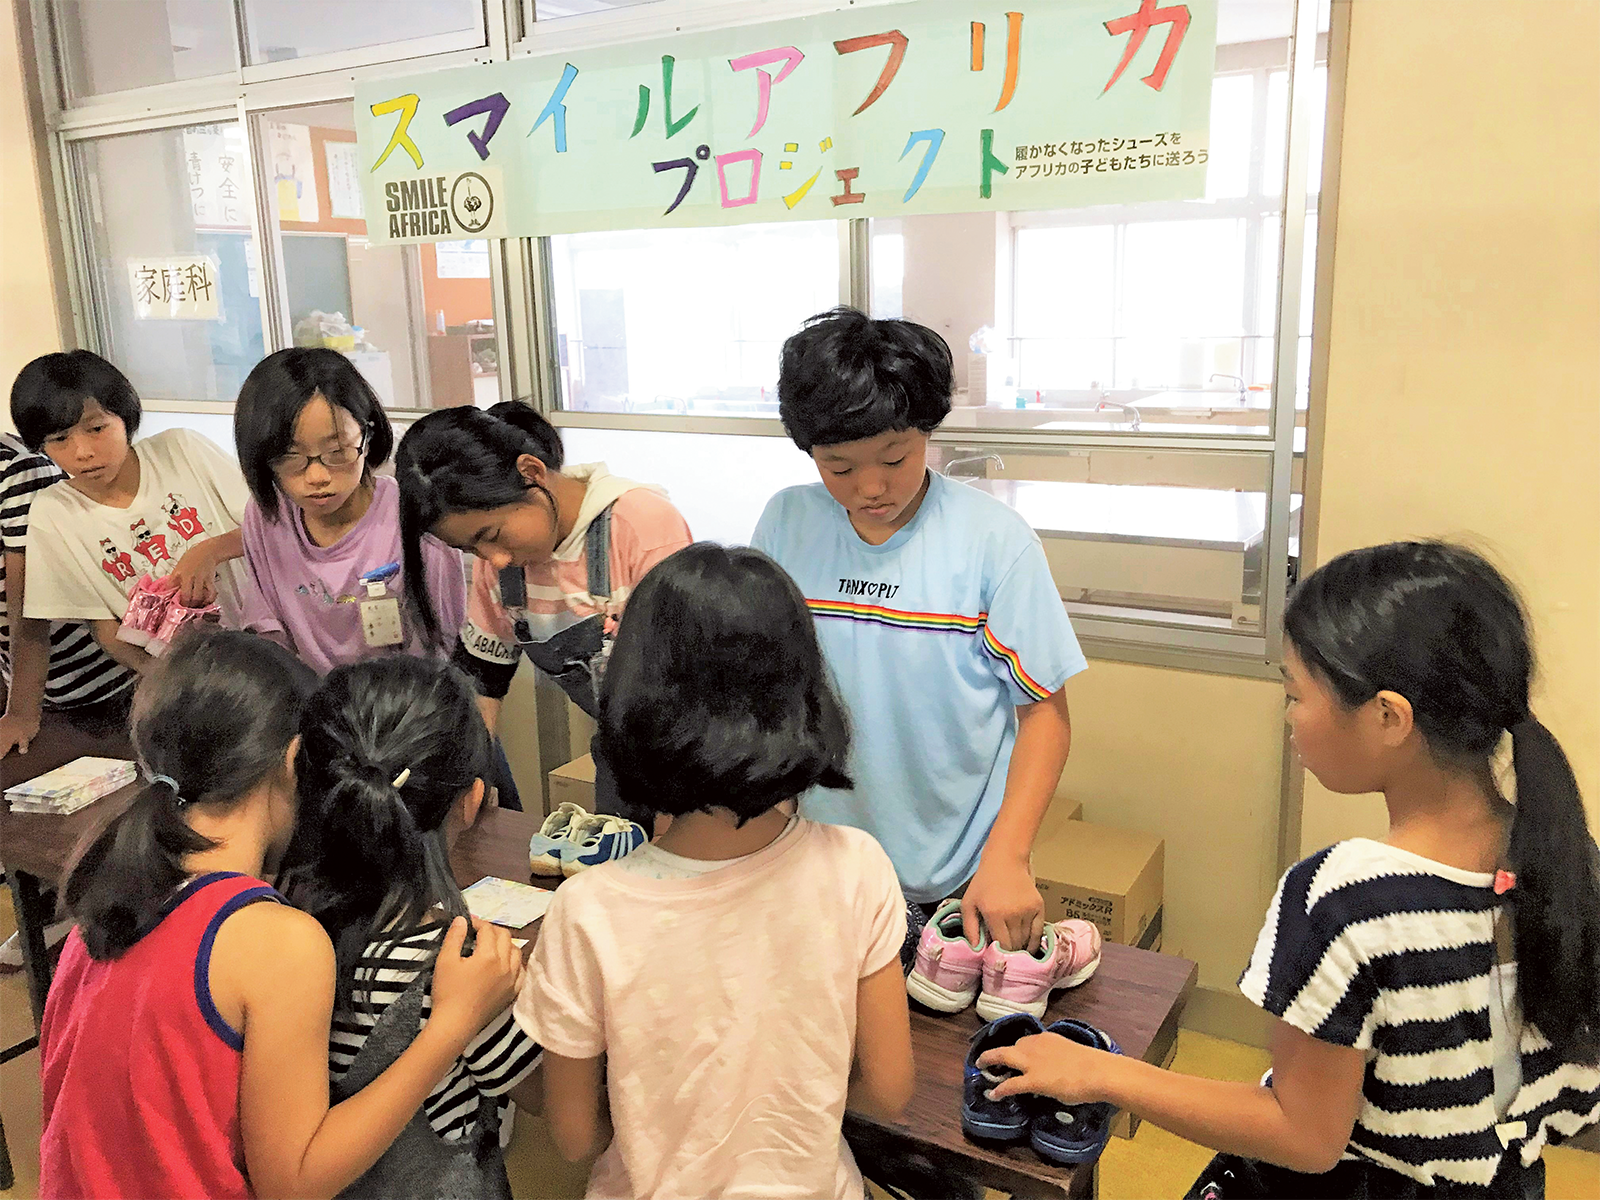 熊本市立黒髪小学校で行われたシューズ回収活動。児童数358人の学校で、外国籍の児童も多く、多様な国の児童同士、仲良く学んでいるという。環境教育にも力を入れている。